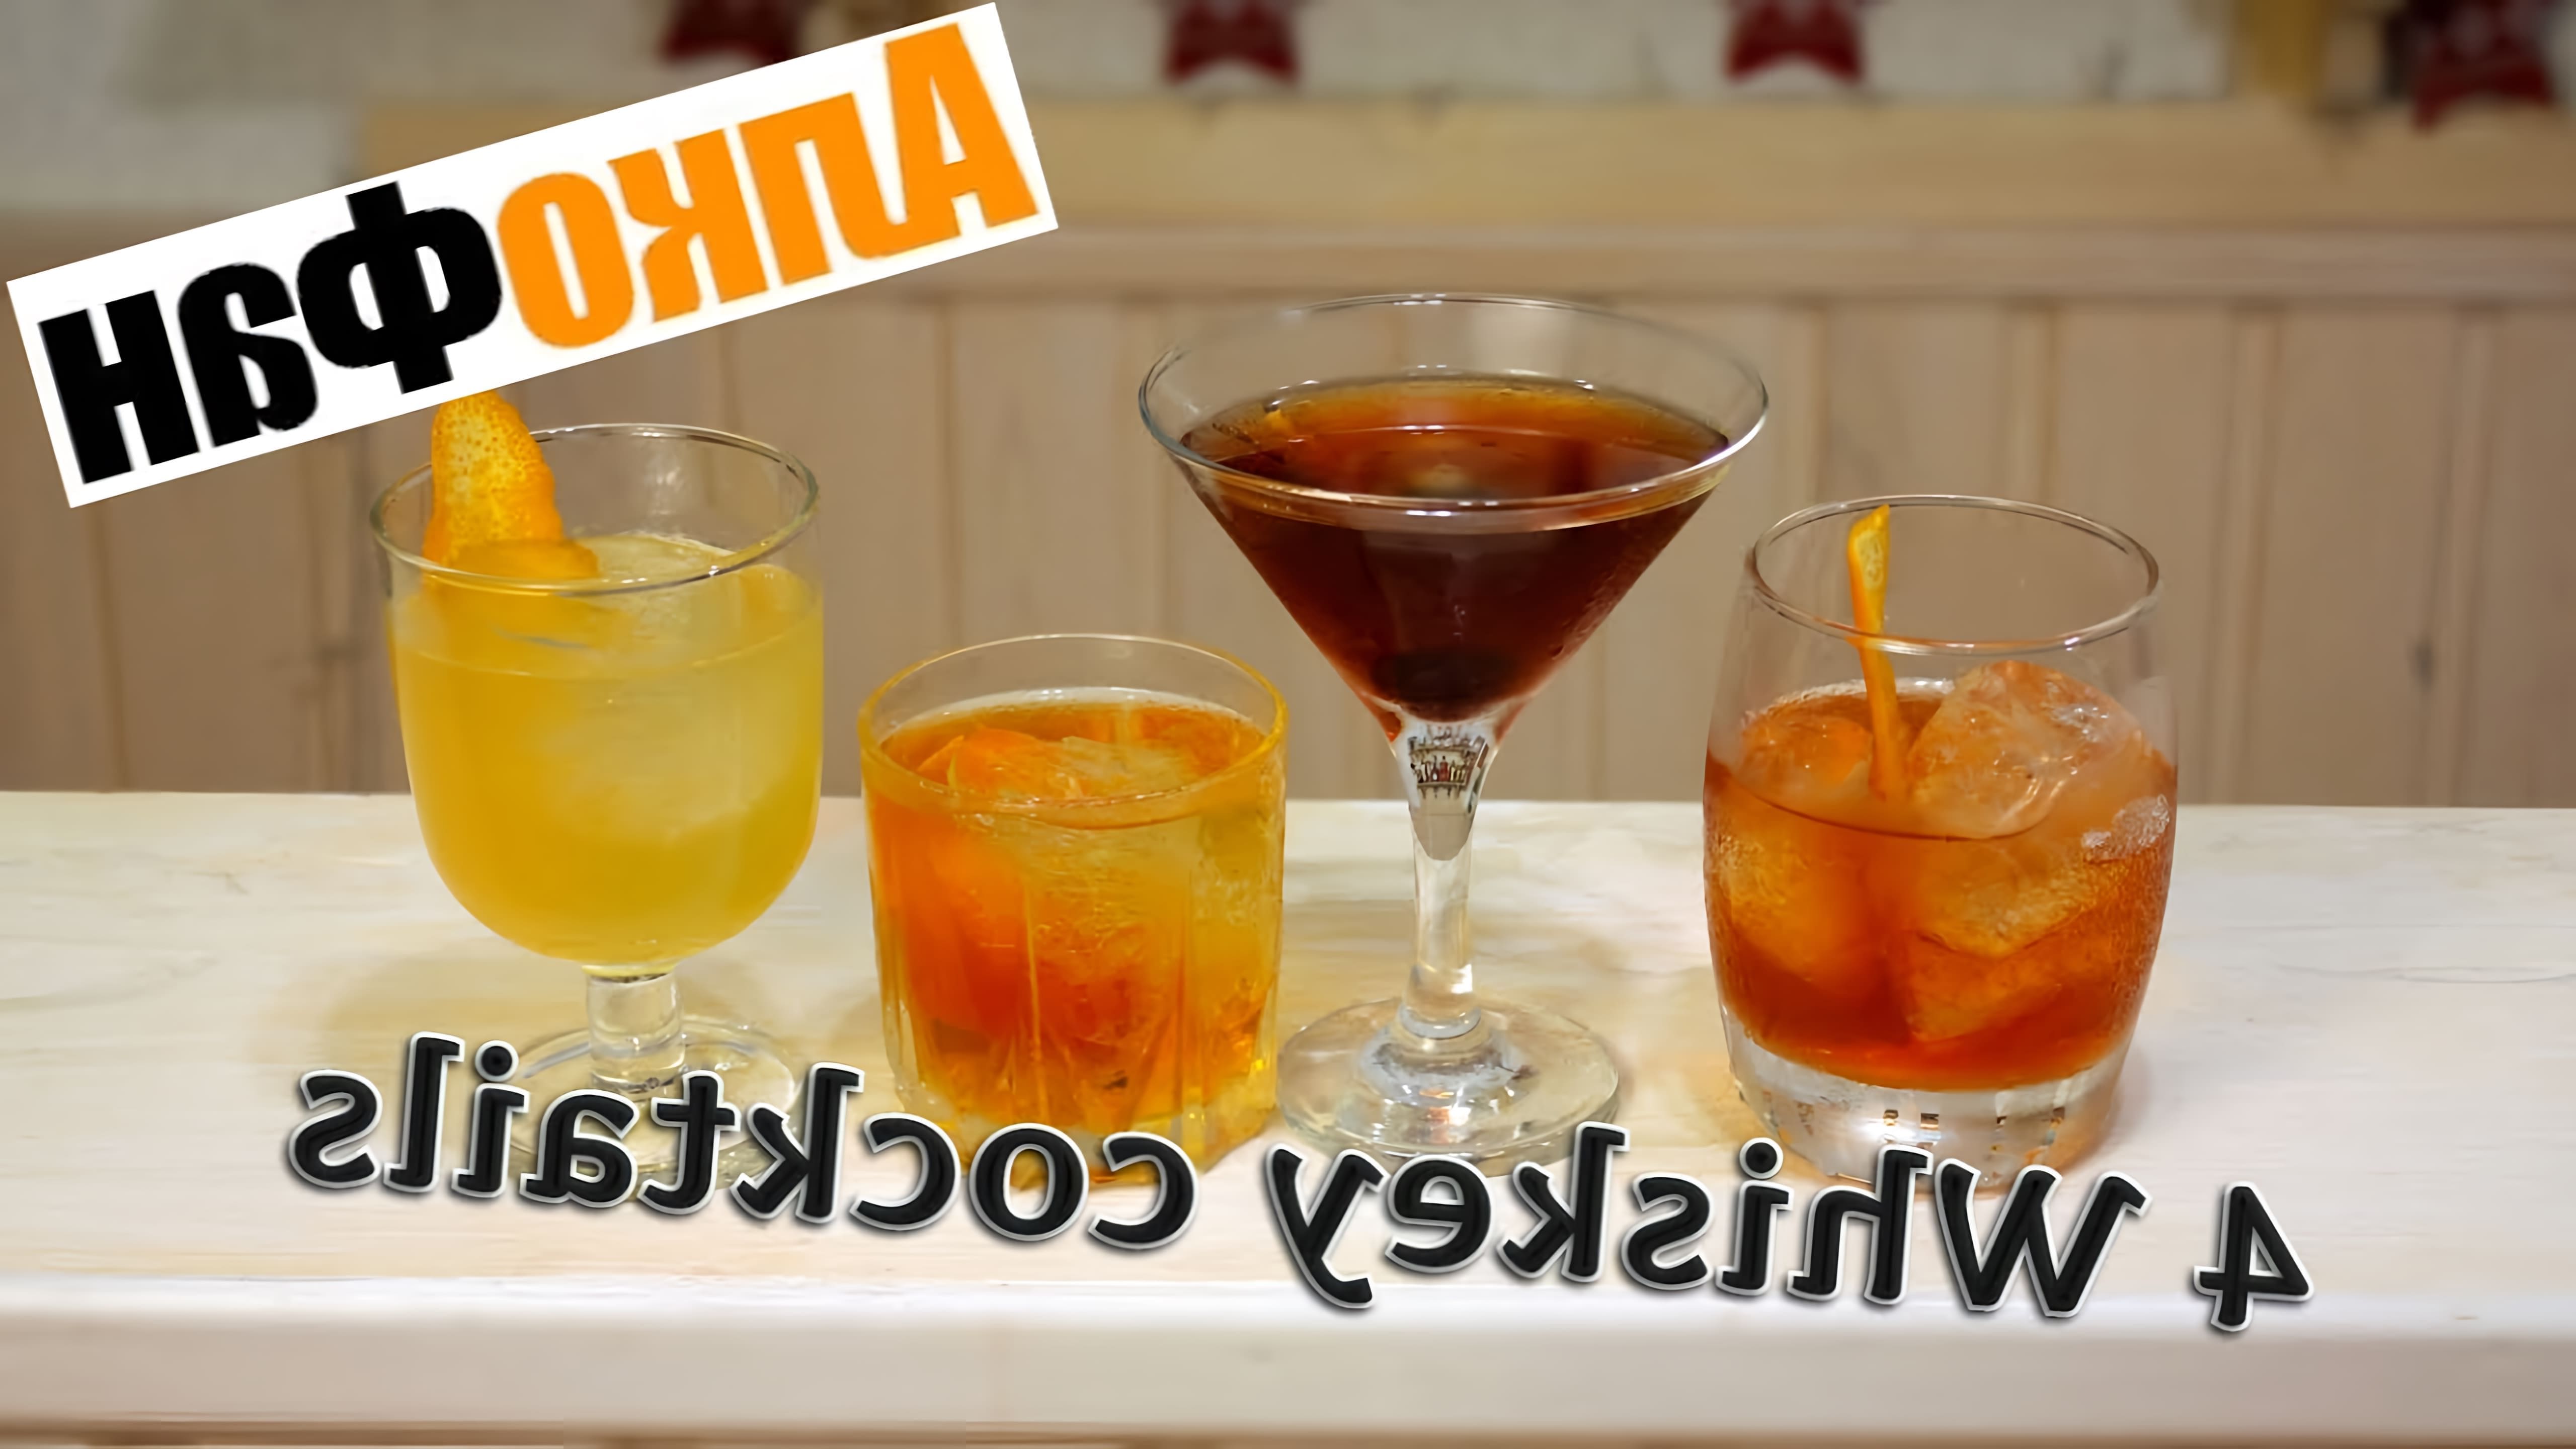 В этом видео демонстрируется приготовление четырех коктейлей на основе виски